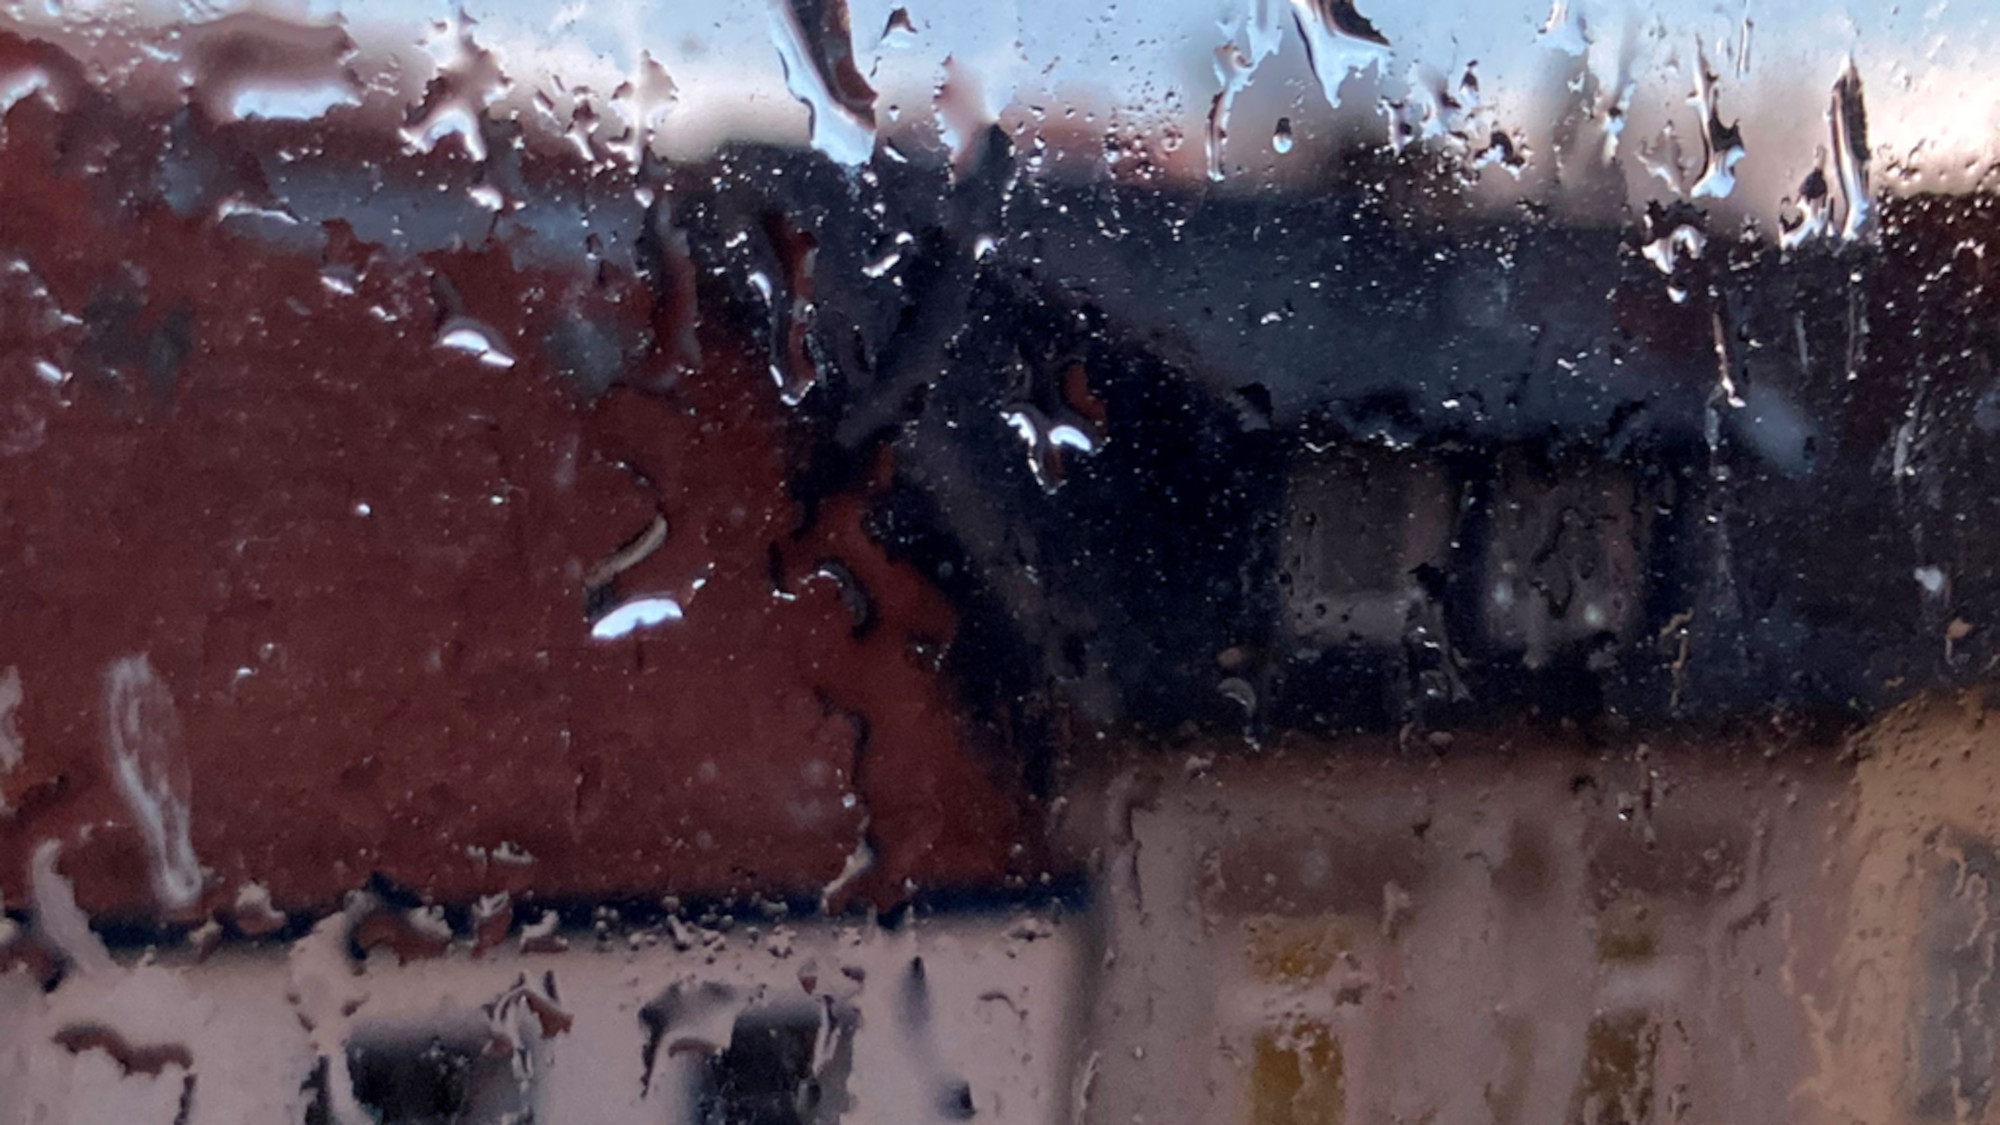 Regen an der Fensterscheibe, im Hintergrund sind verschwommen Häuser zu erkennen.